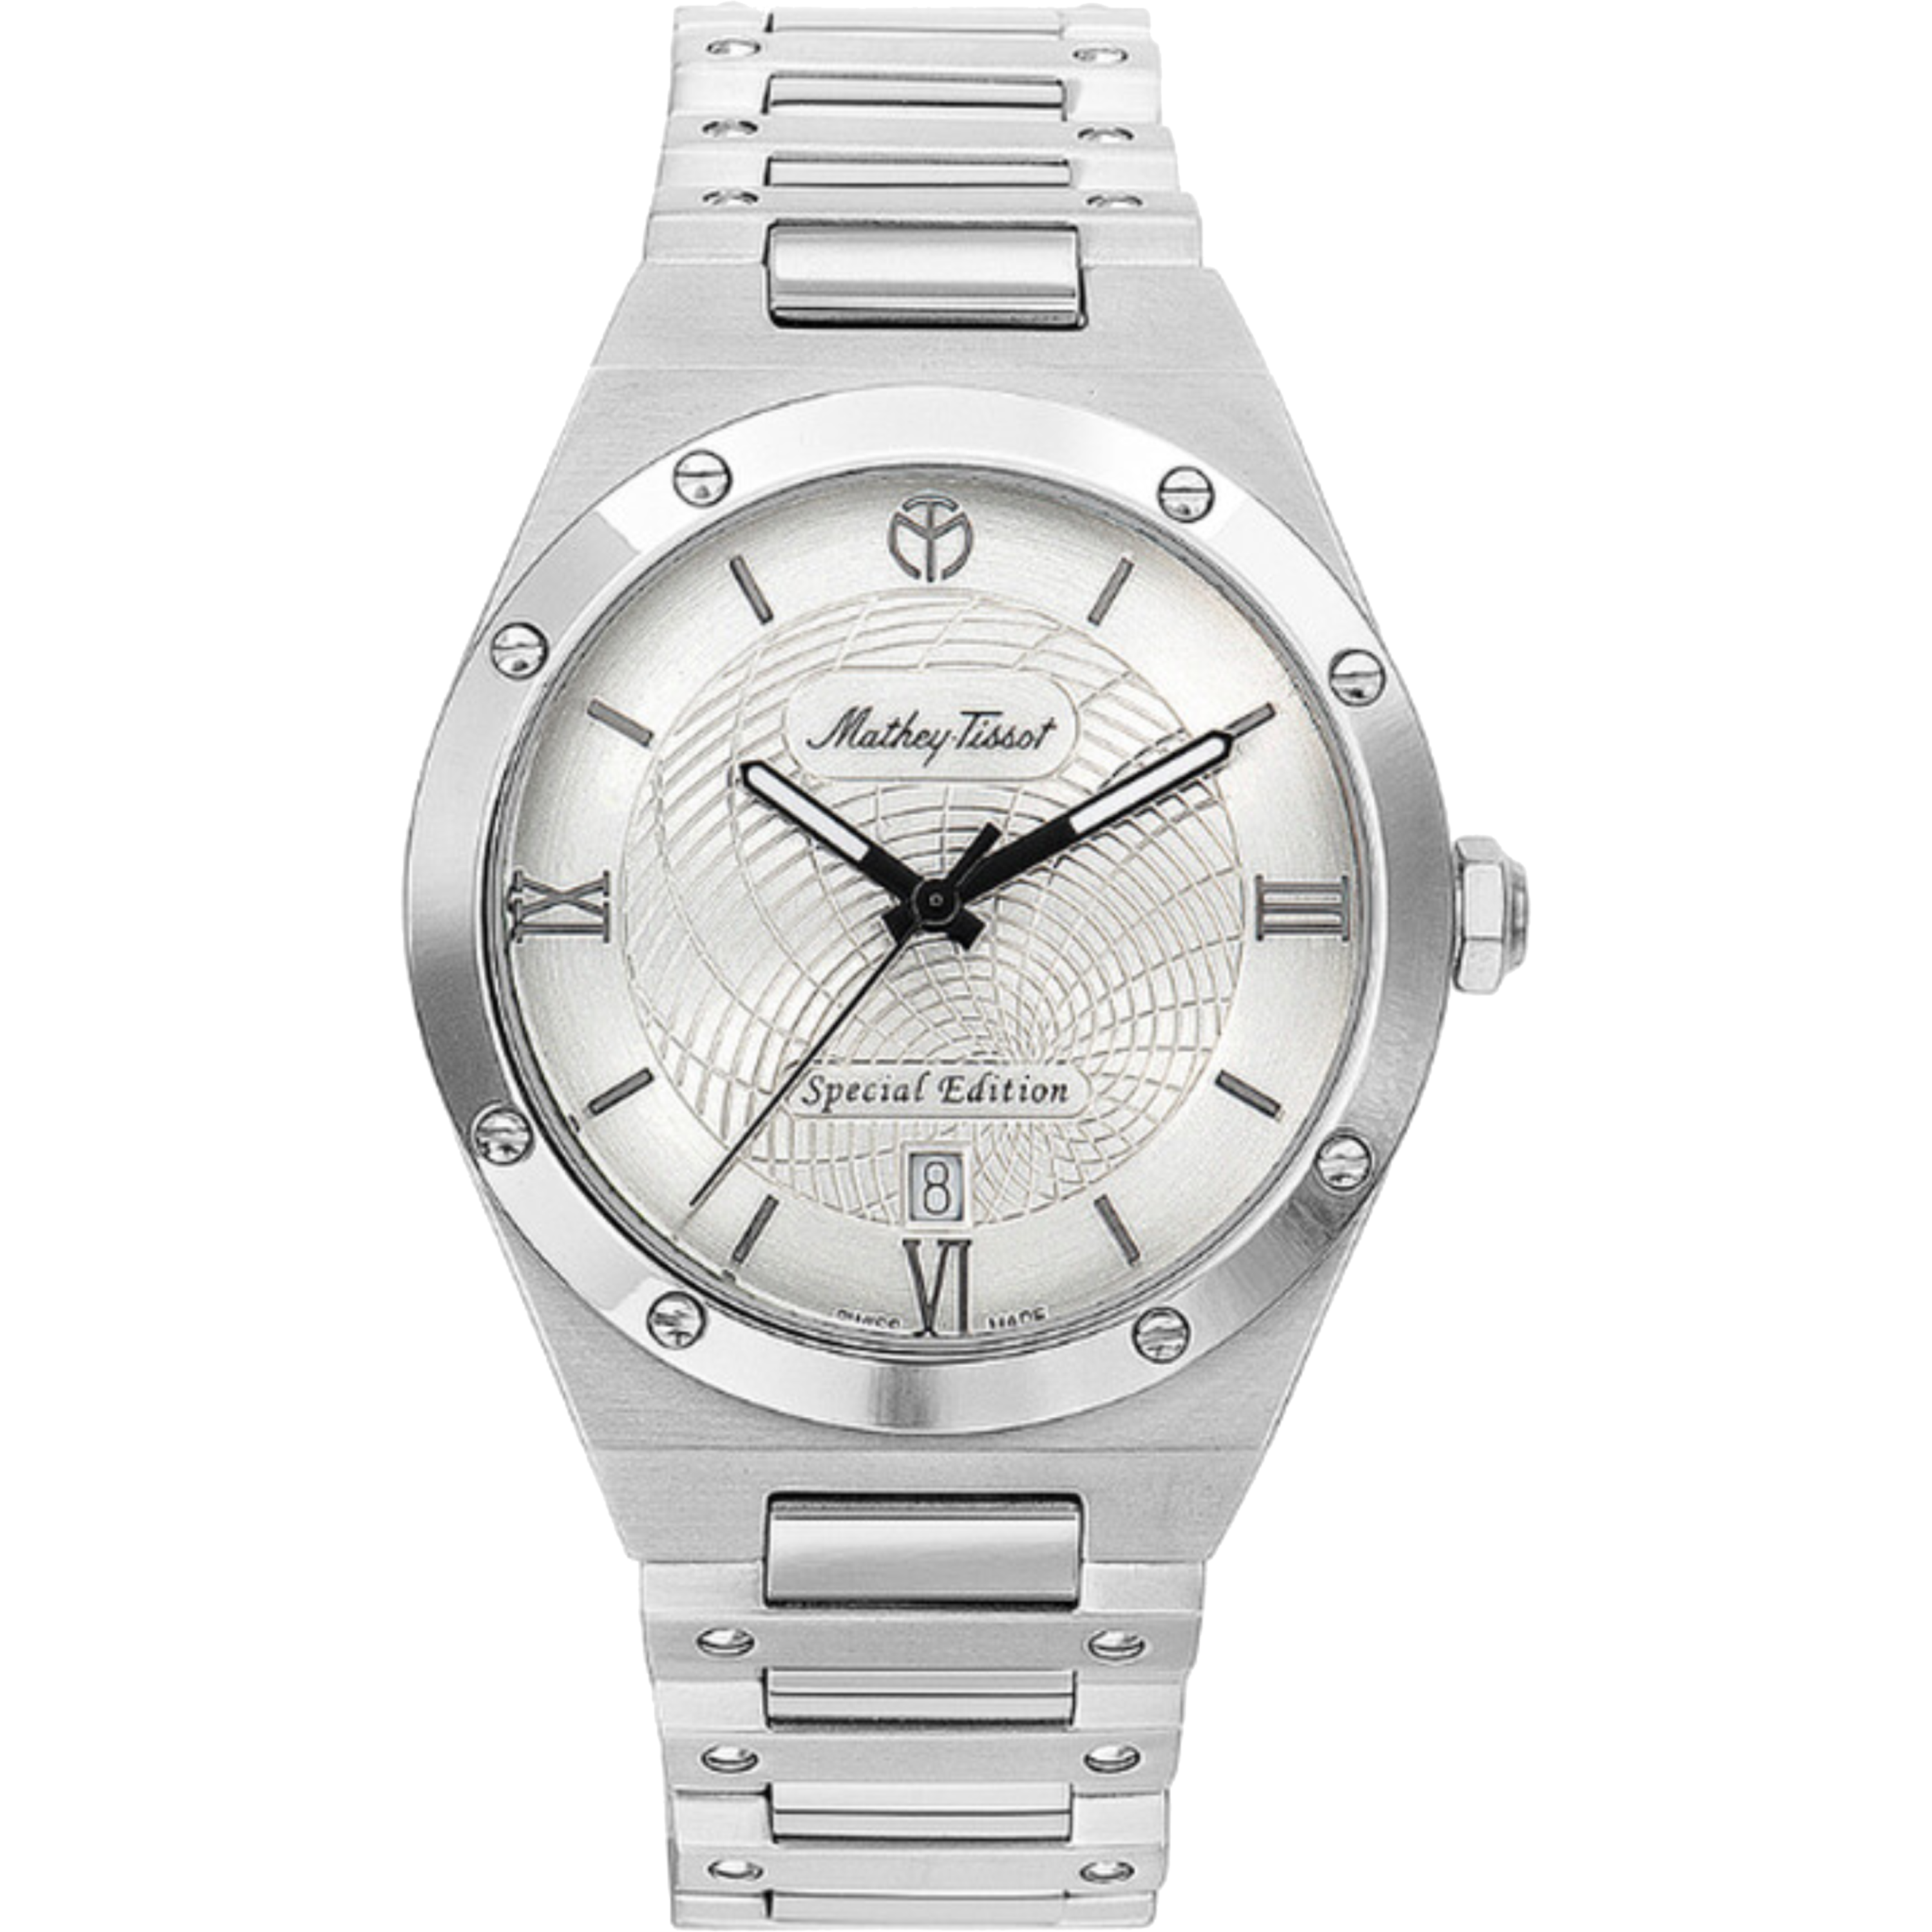 שעון יד לגבר Mathey Tissot H680SE 41mm צבע כסף/זכוכית ספיר - אחריות לשנה ע"י היבואן